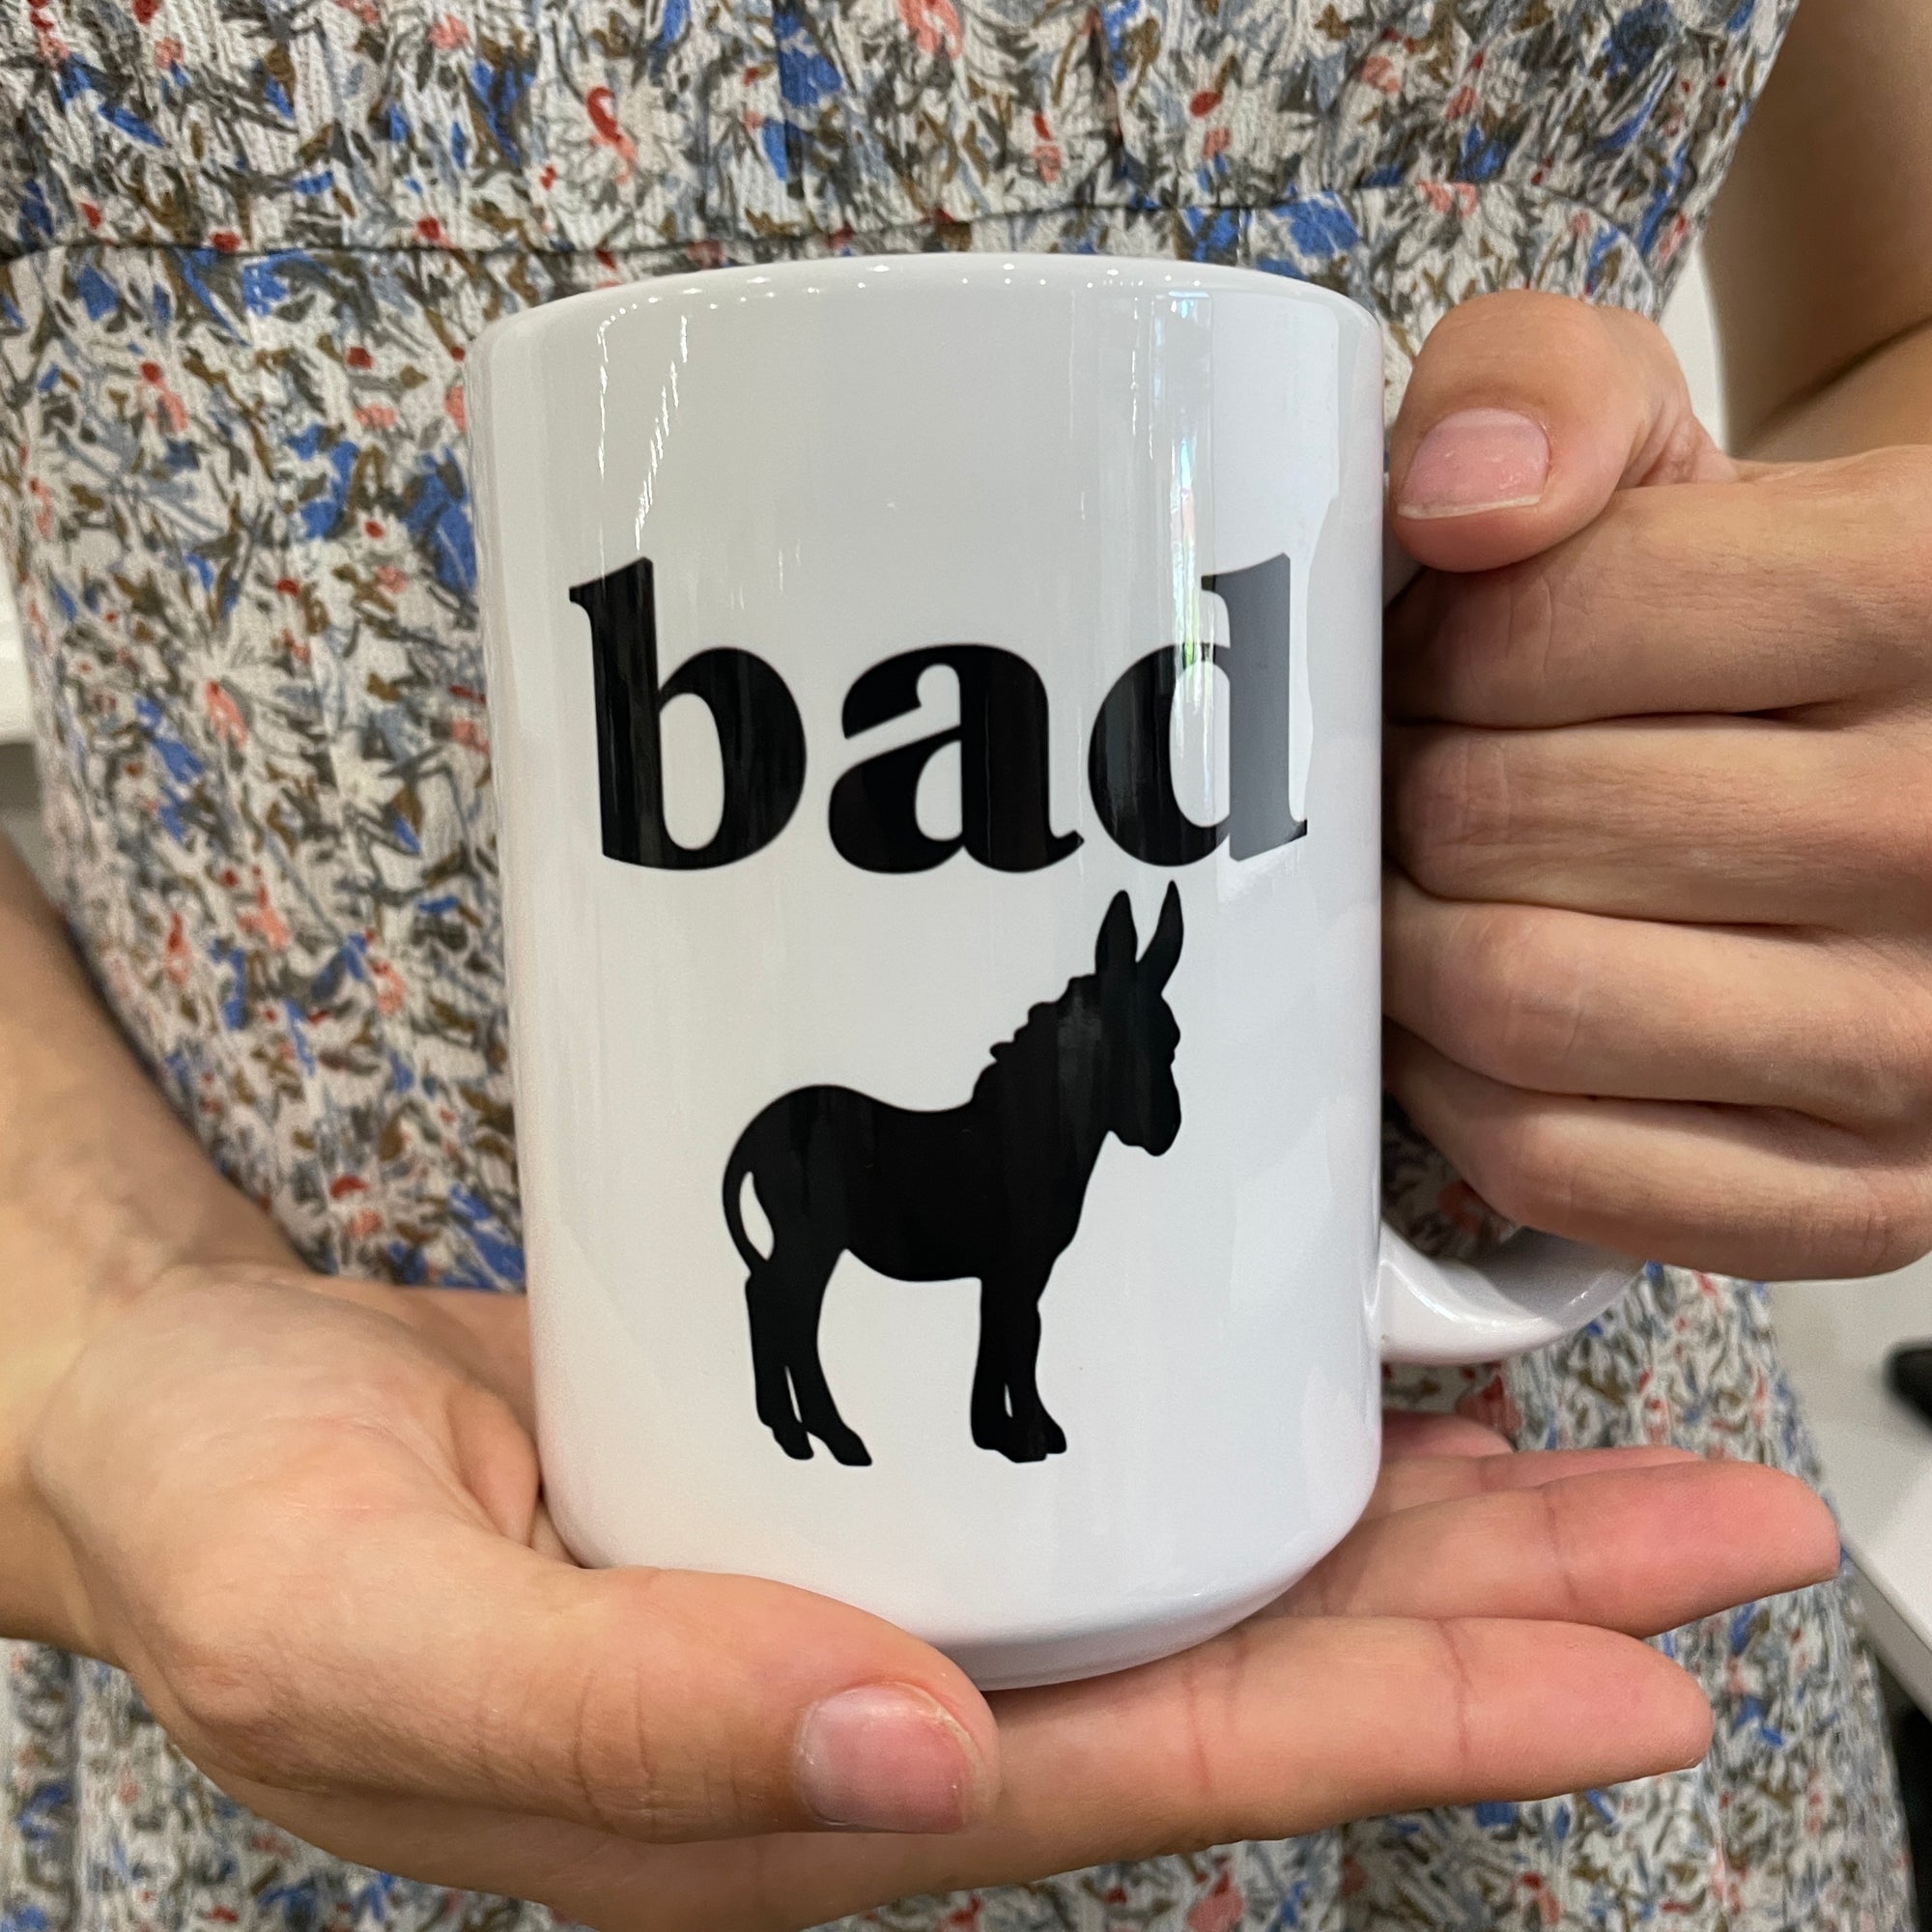 Badass mug